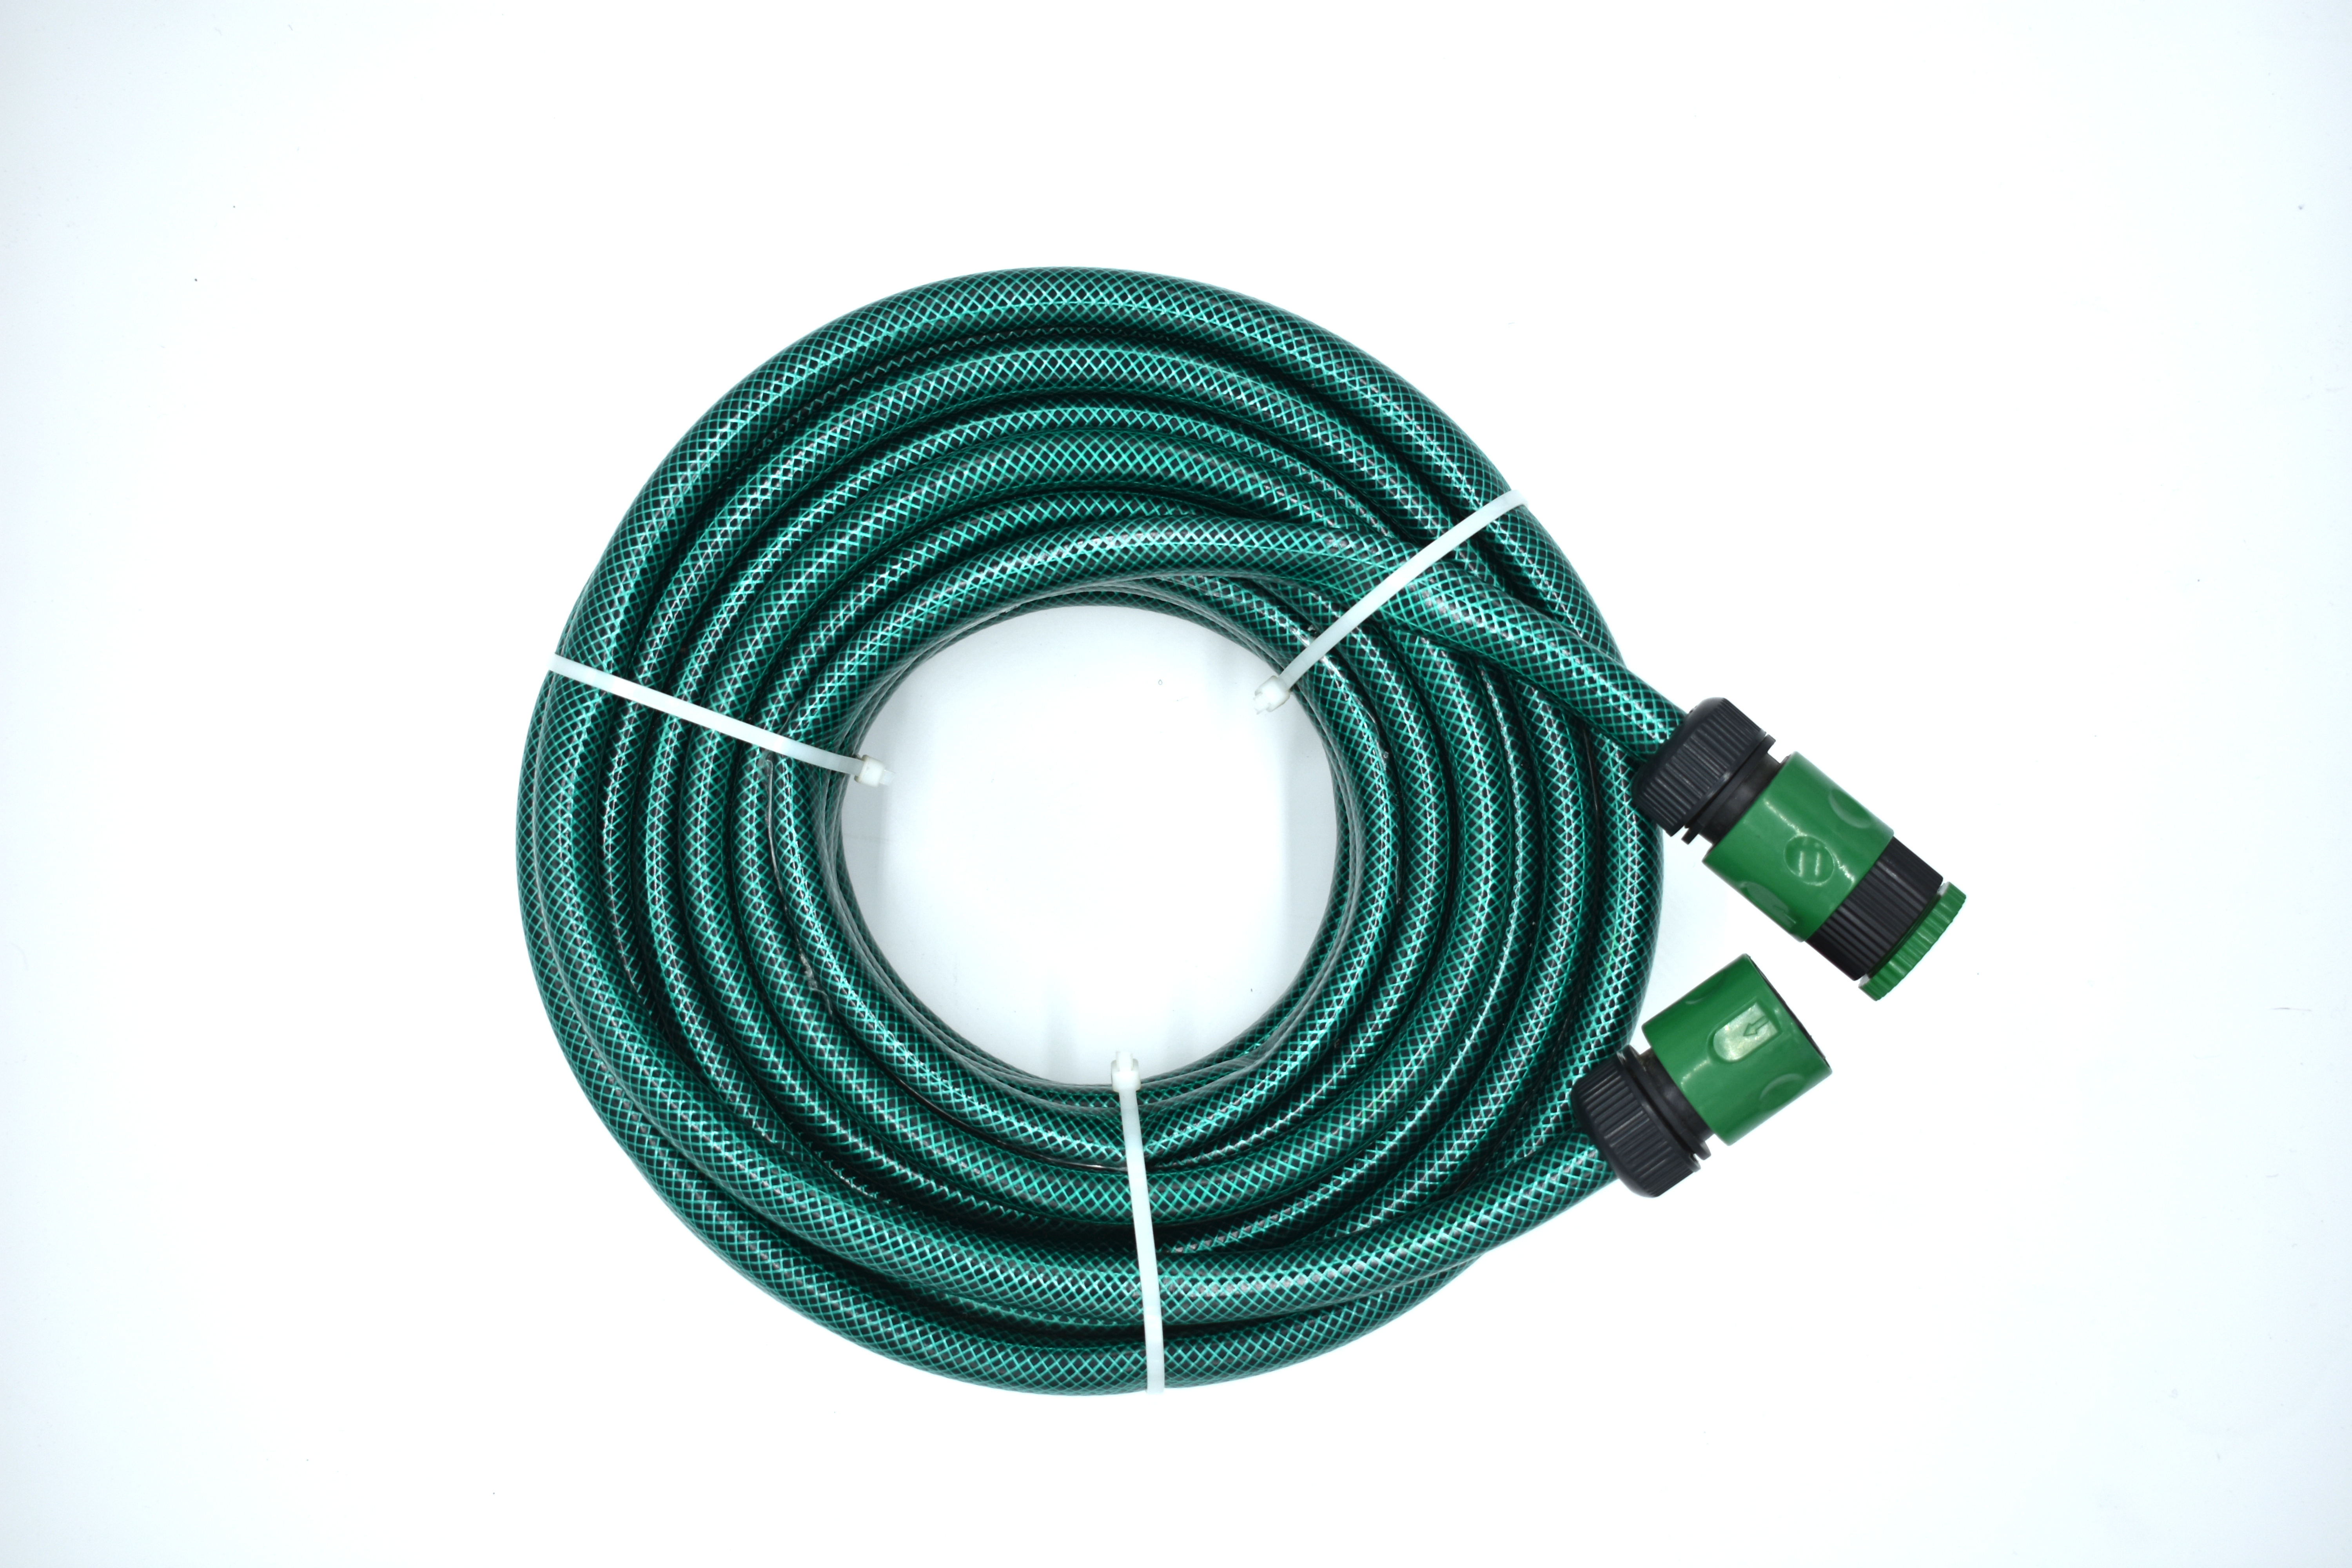 PVC flexible garden hose